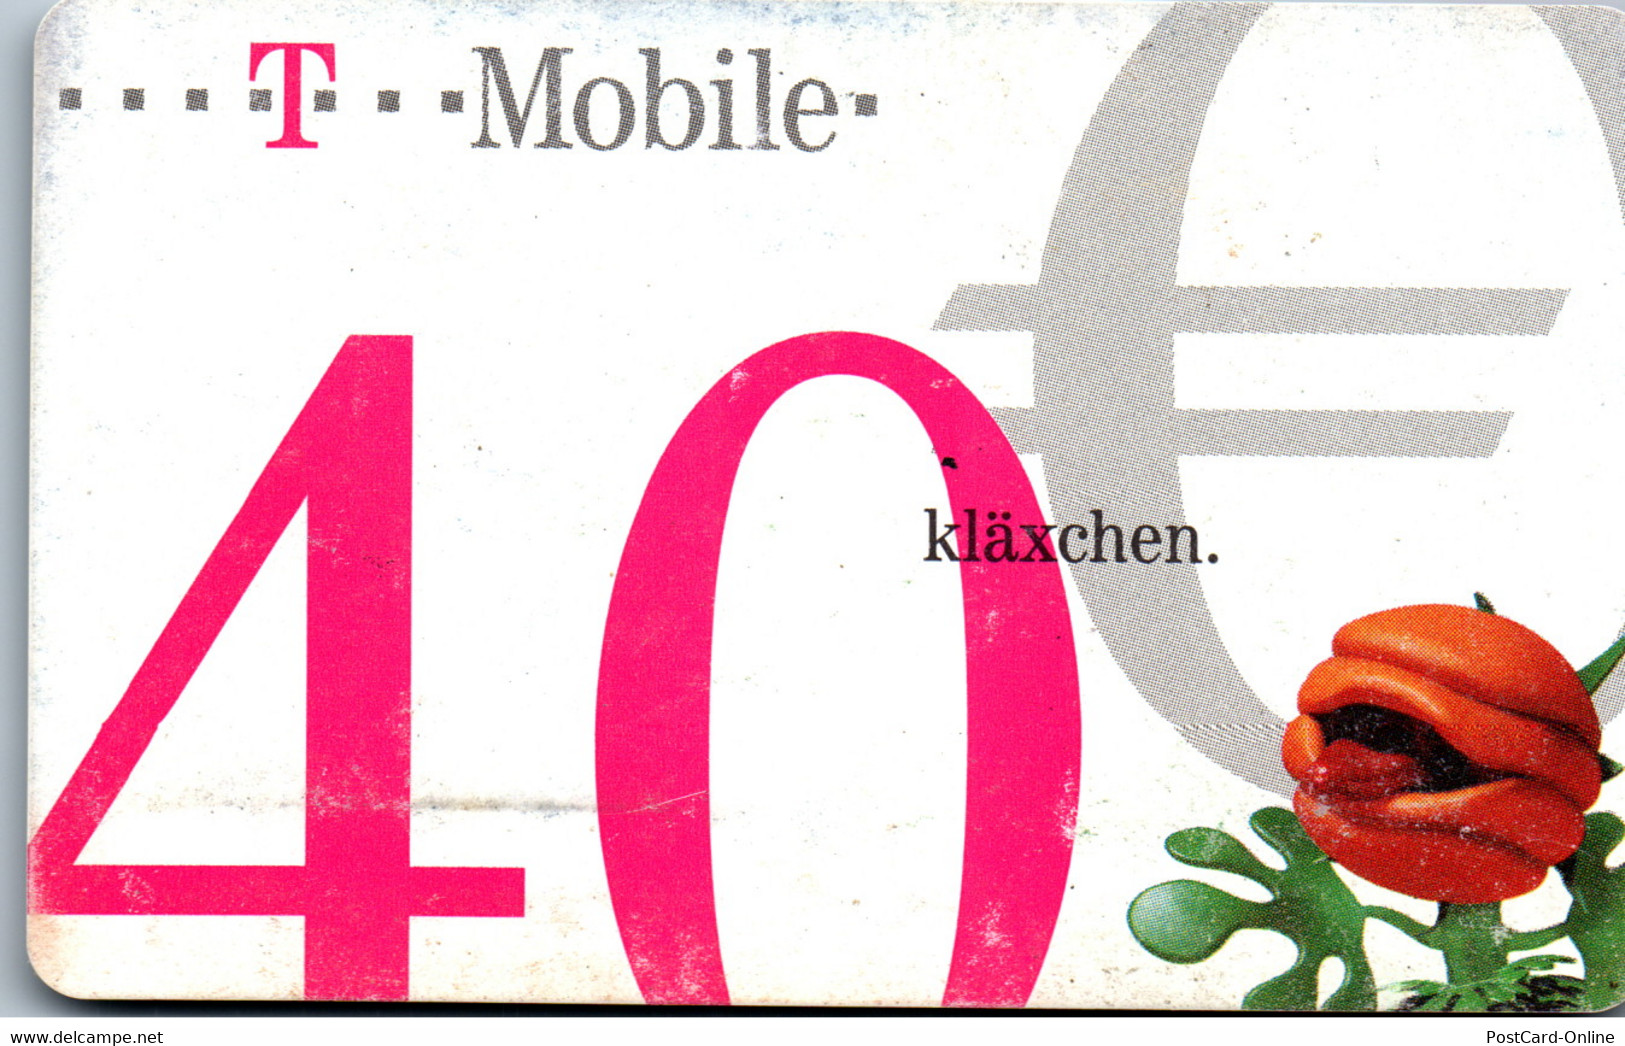 31968 - Österreich - T-Mobile , Kläxchen - Oesterreich